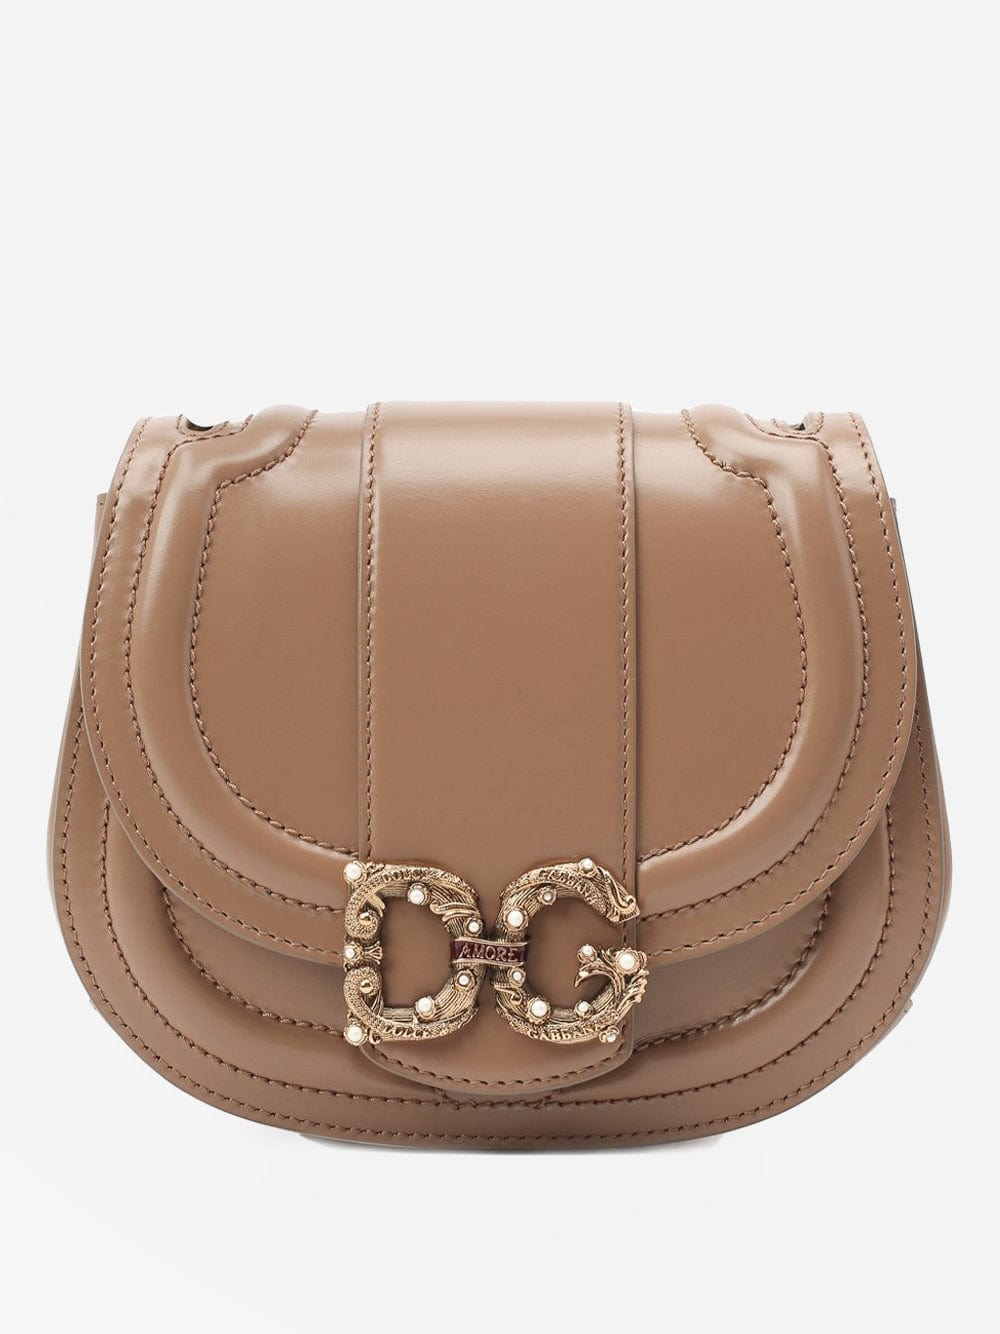 Dolce & Gabbana DG Amore Small Shoulder Bag